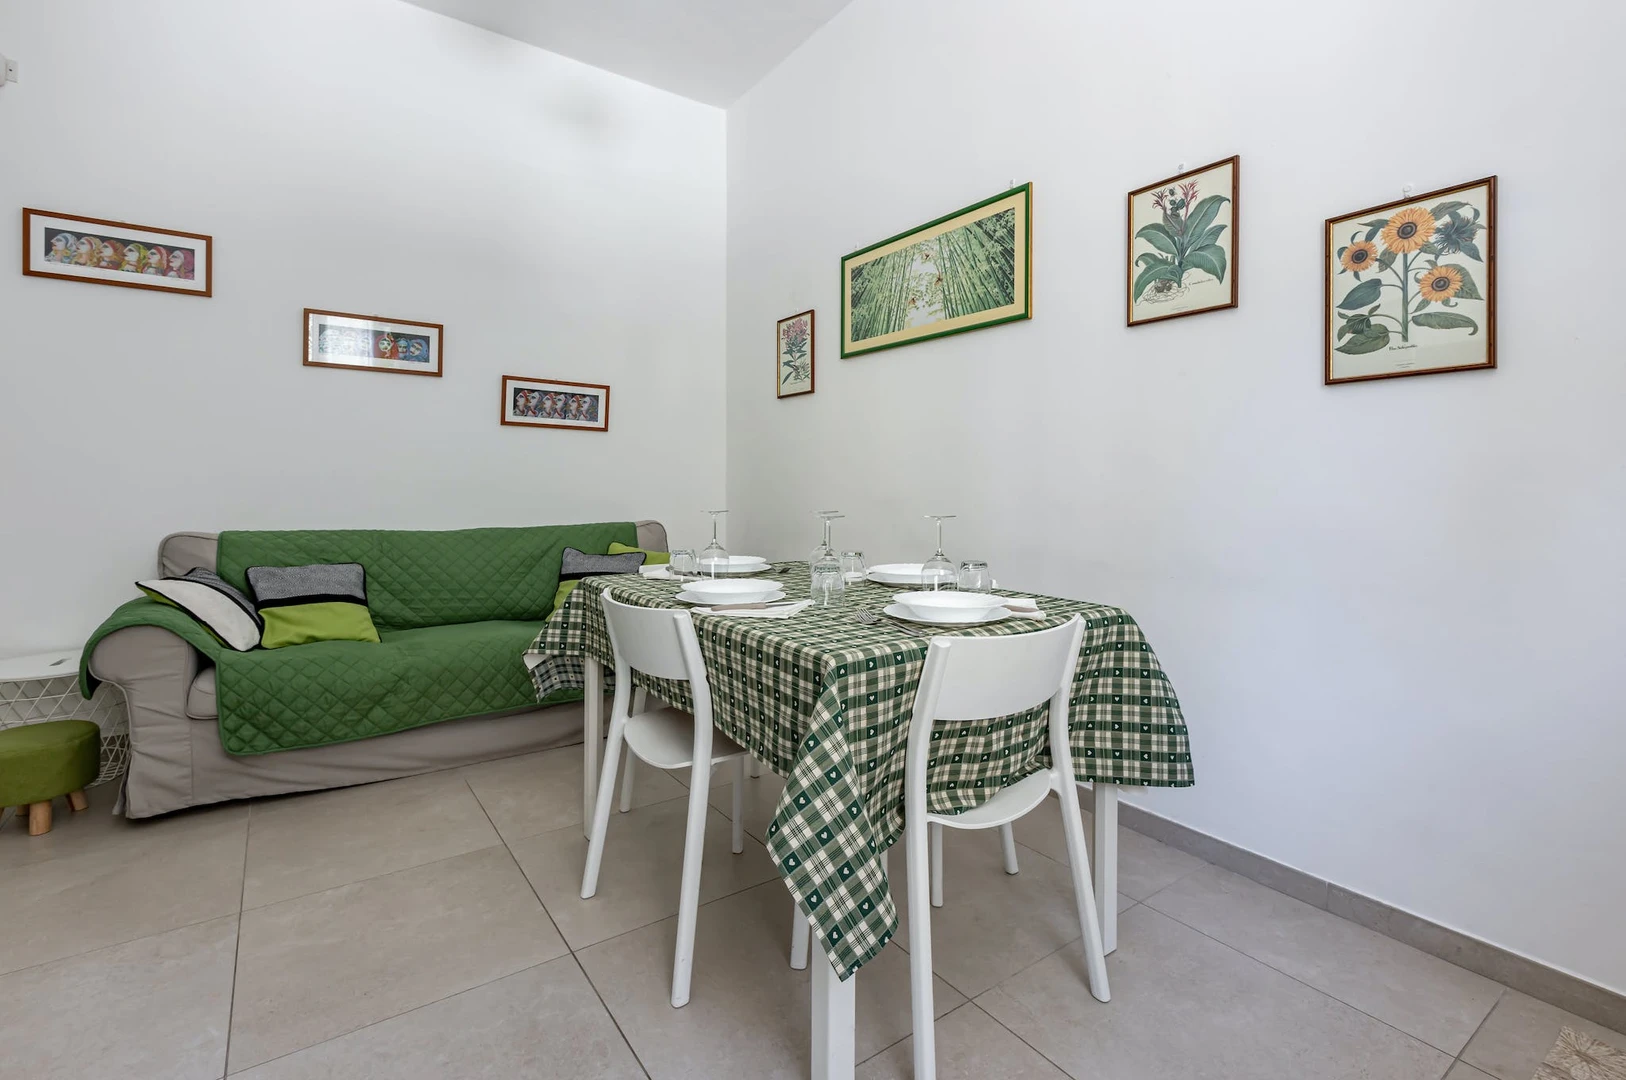 Modern and bright flat in Casteddu/cagliari